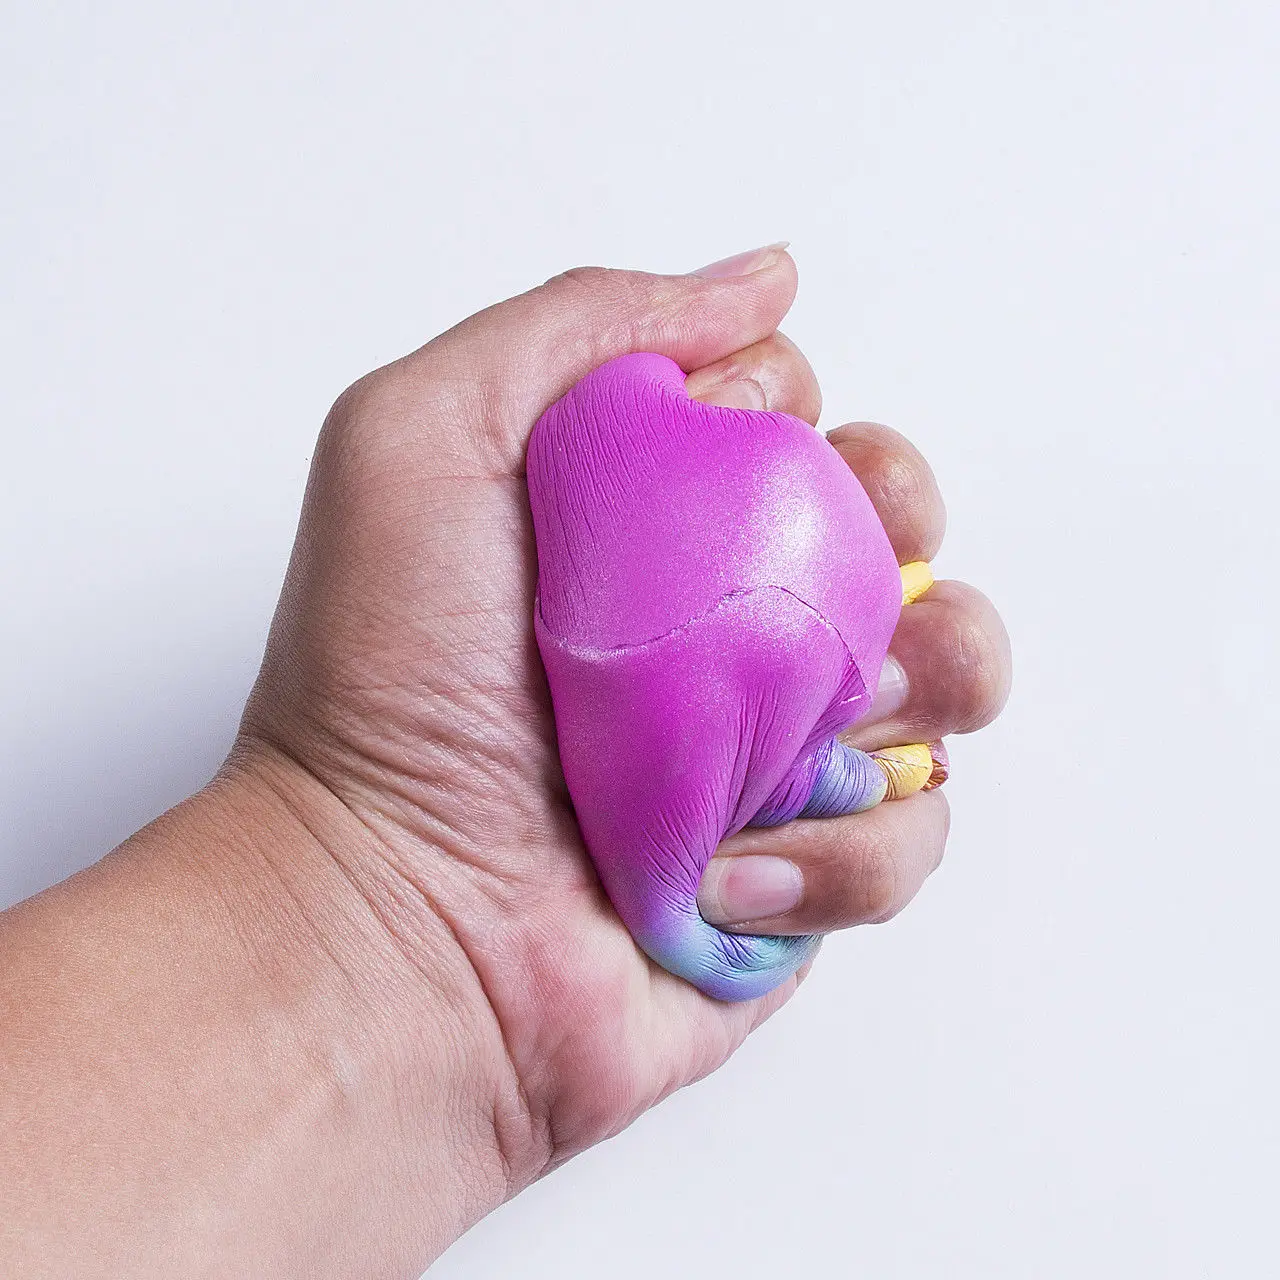 Jumbo Squishy супер мягкие медленно поднимающиеся Squeeze Игрушка давление рельеф детские игрушки Лот